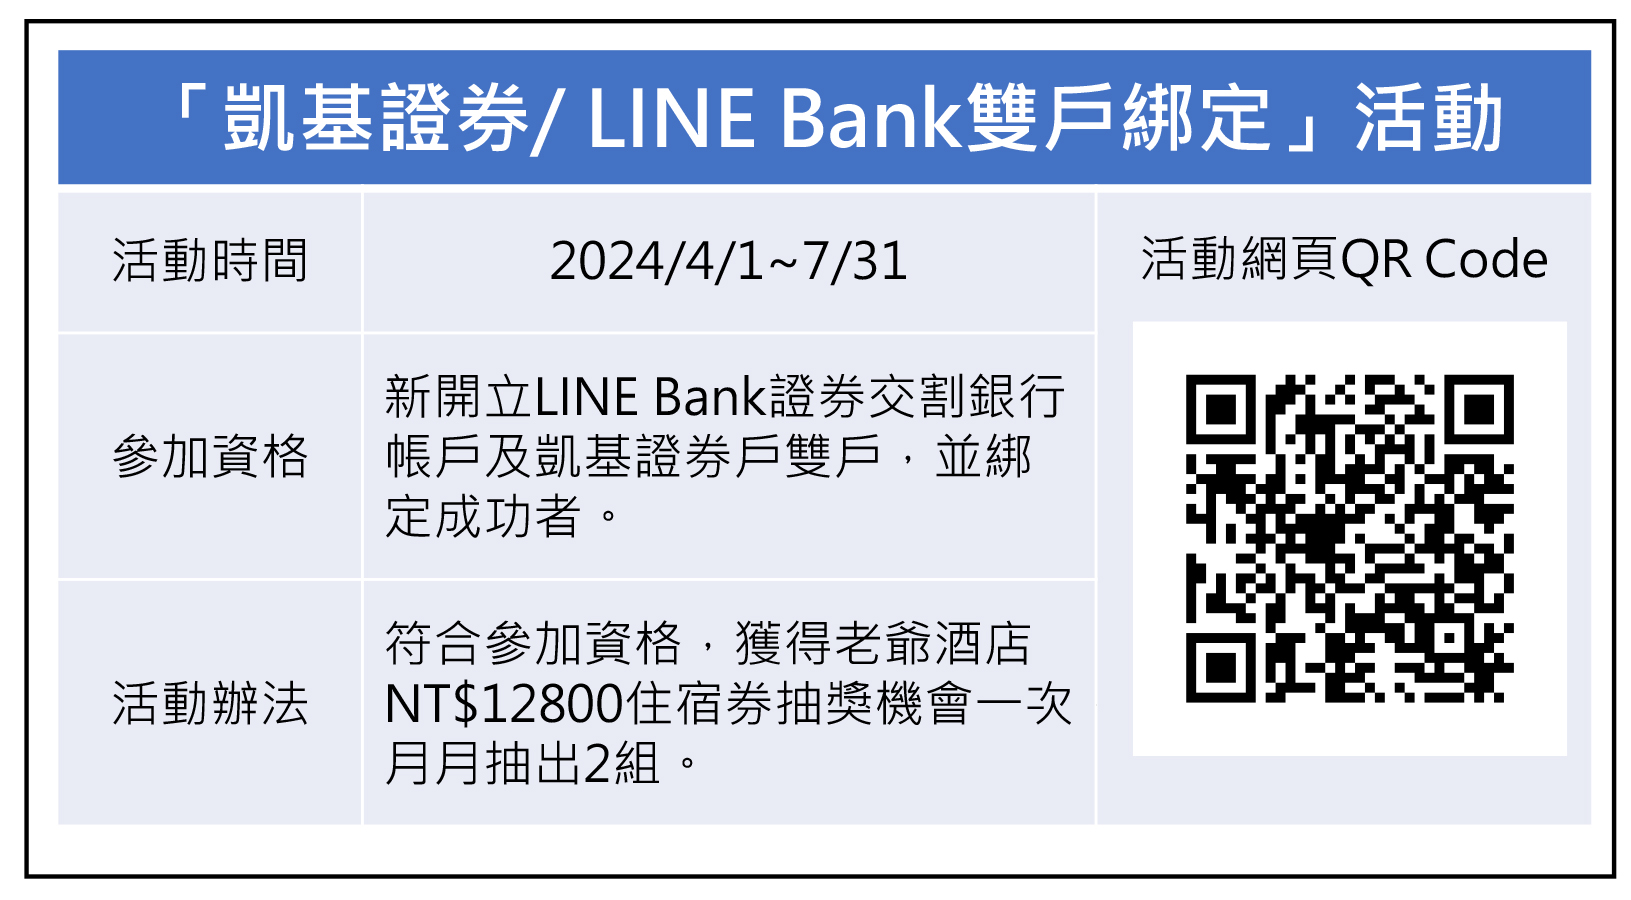 凯基证券LINE Bank双户绑定活动。(凯基证券/提供)